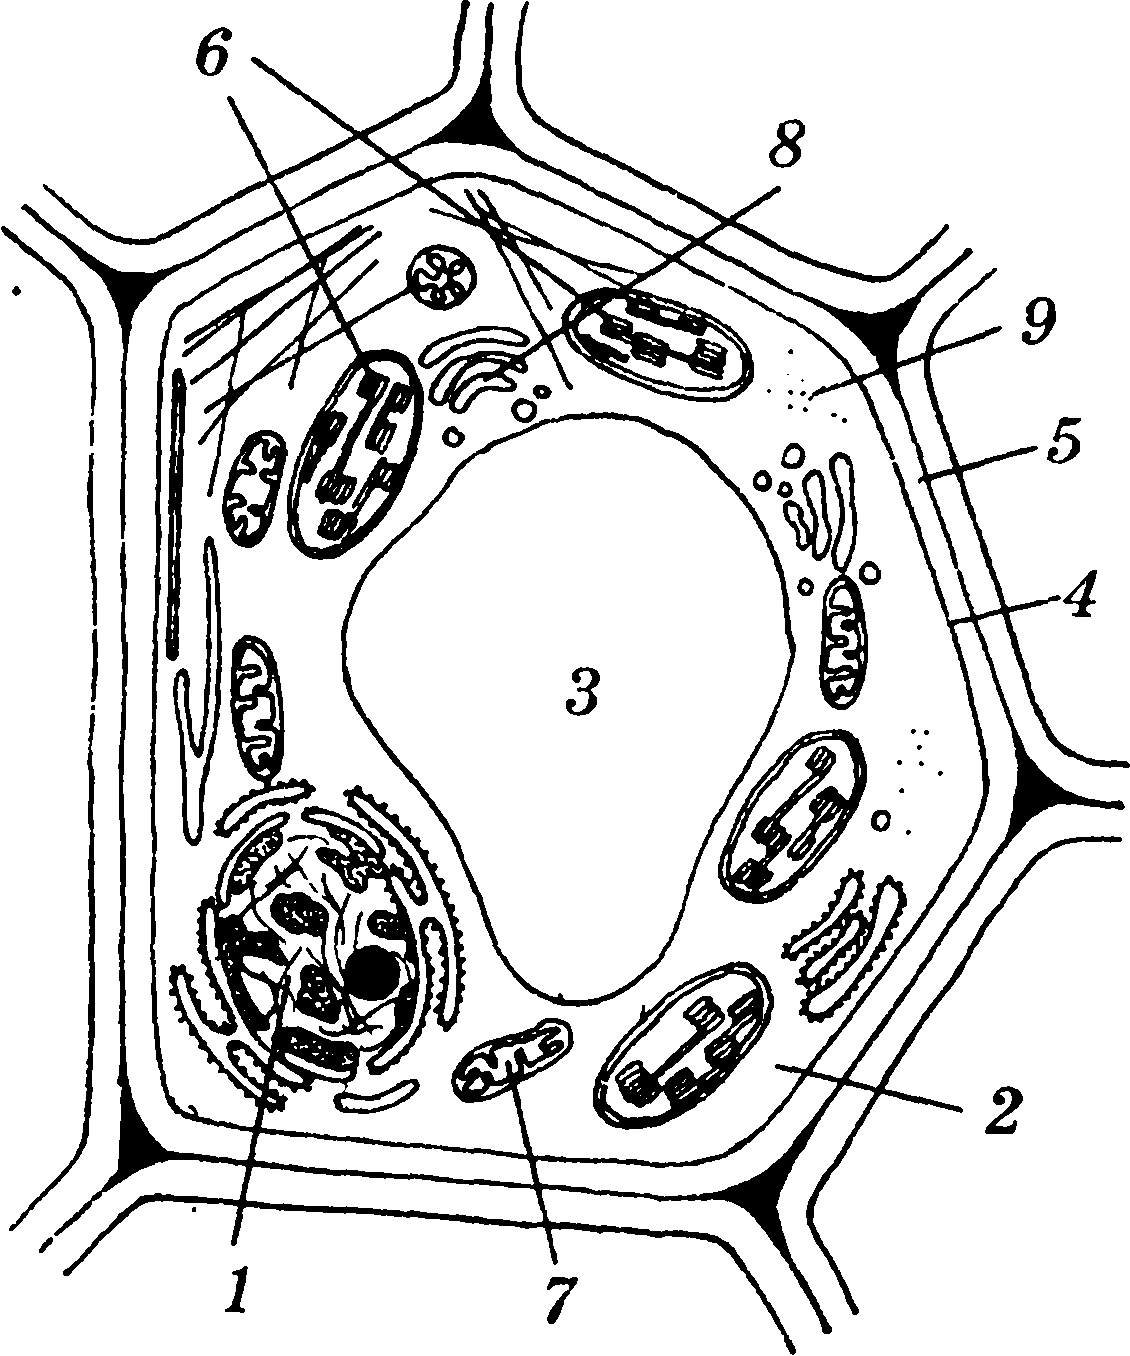 Рисунок растительной клетки структура клетки. Схематическое строение растительной клетки. Схема строения растительной клетки рисунок. Схема строения растительной клетки без подписей. Рисунок растительной клетки с обозначениями 6